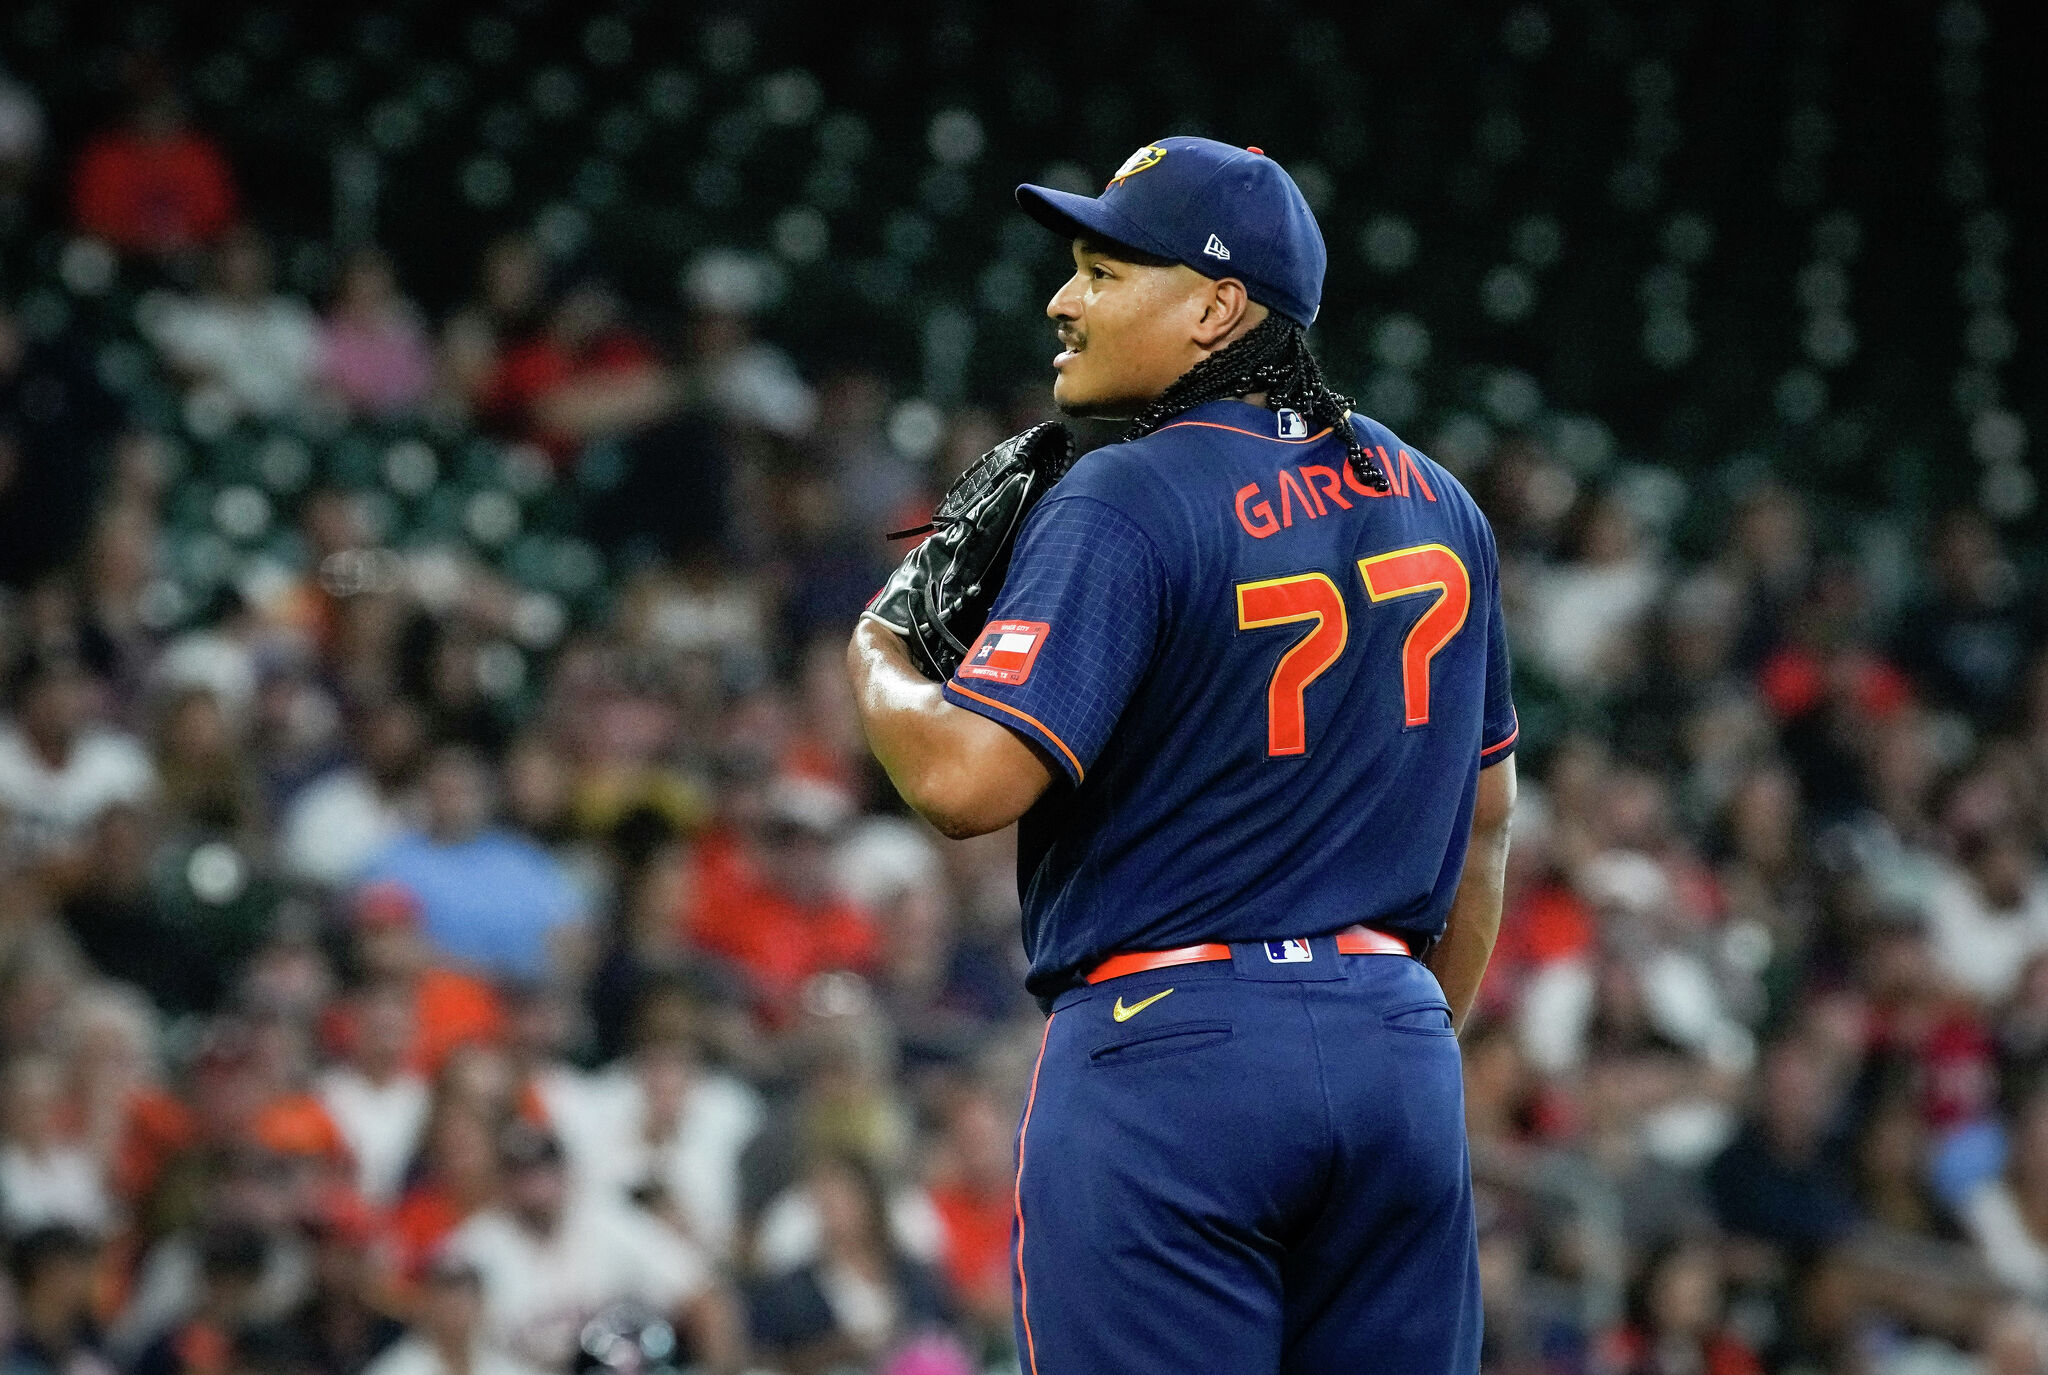 Houston Astros pitcher Luis Garcia's new windup vs. old windup